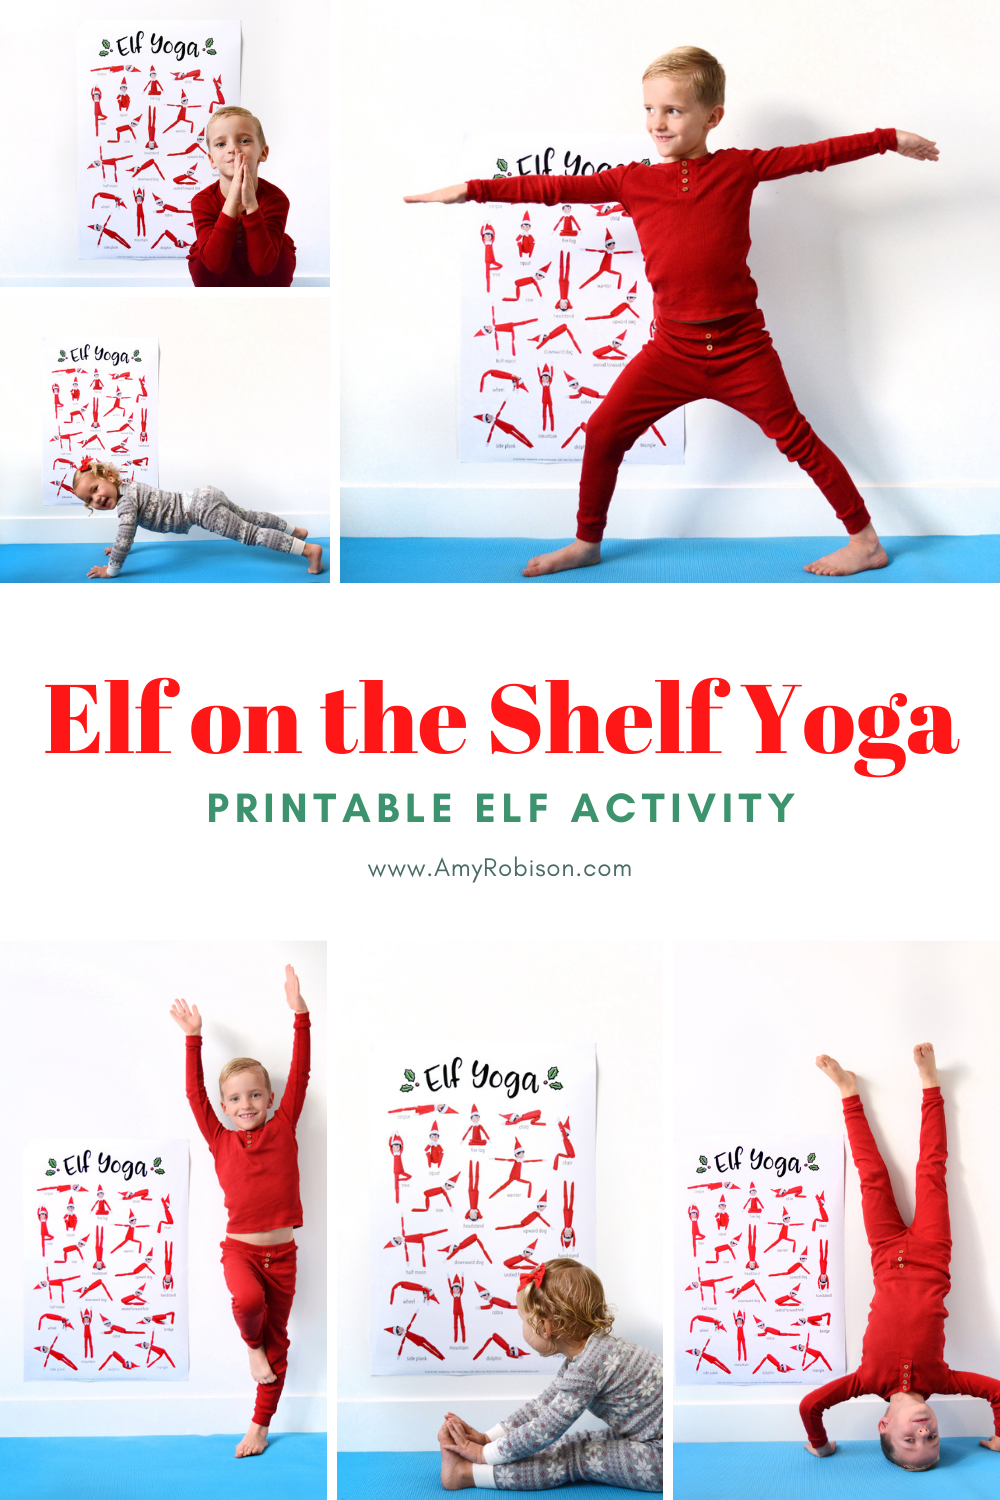 elf-on-the-shelf-yoga-poster-printable-amy-robison-blog